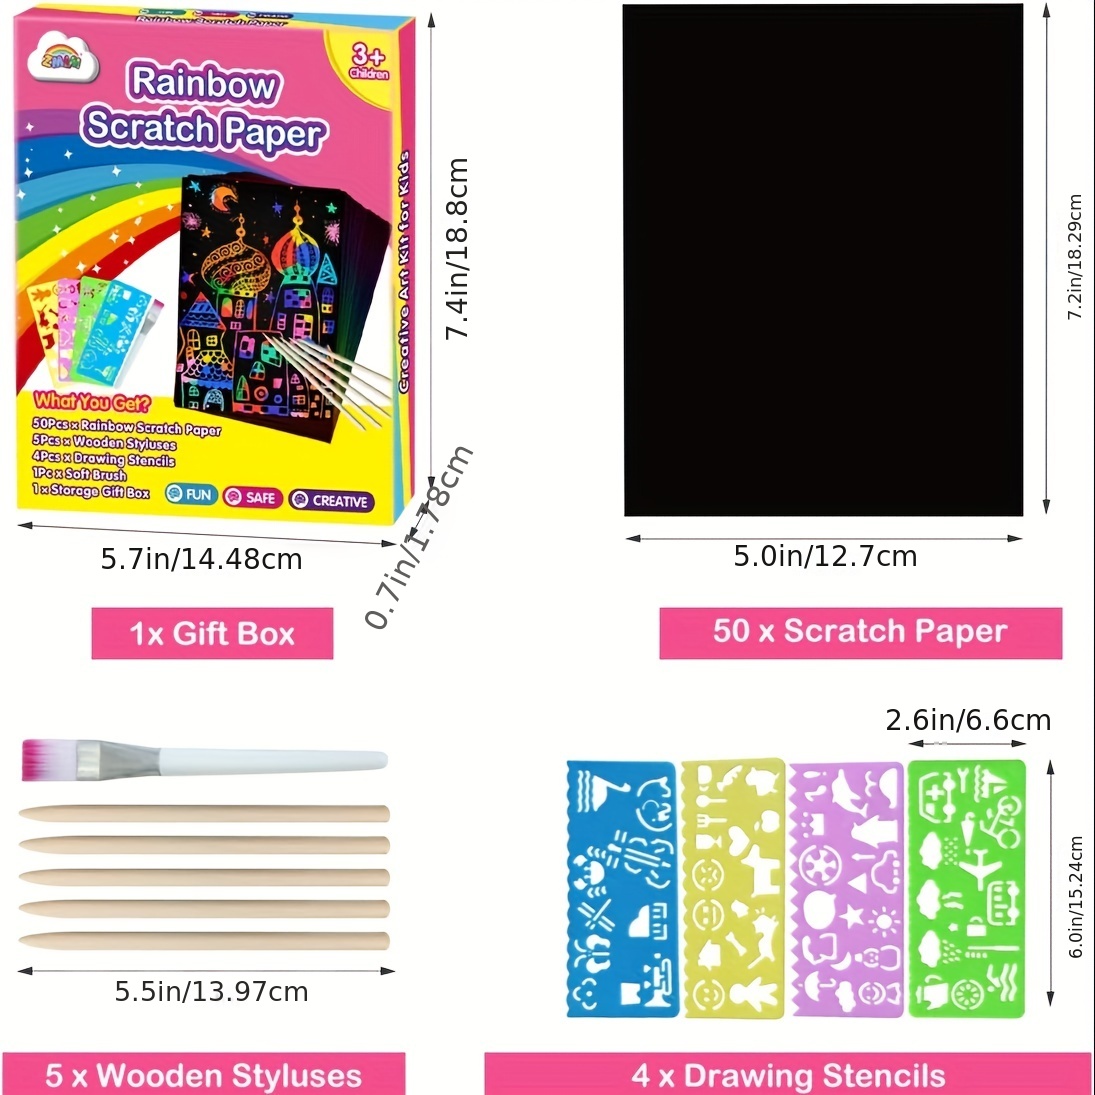 Rainbow Scratch Notebook for Kids - 10 Pack Magic Scratch Paper